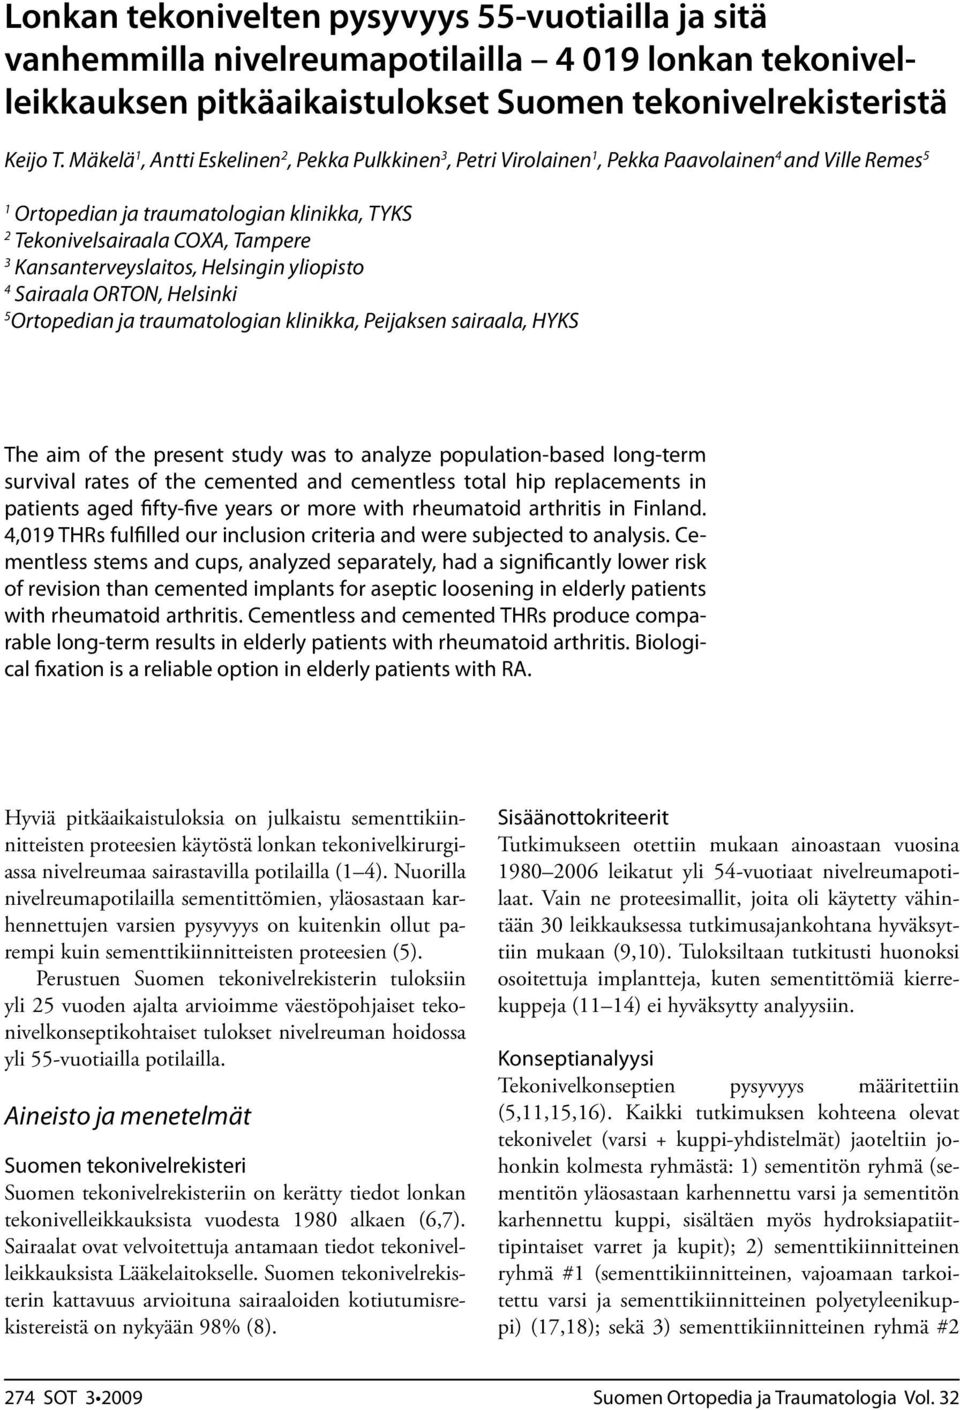 Kansanterveyslaitos, Helsingin yliopisto 4 Sairaala ORTON, Helsinki 5 Ortopedian ja traumatologian klinikka, Peijaksen sairaala, HYKS The aim of the present study was to analyze population-based